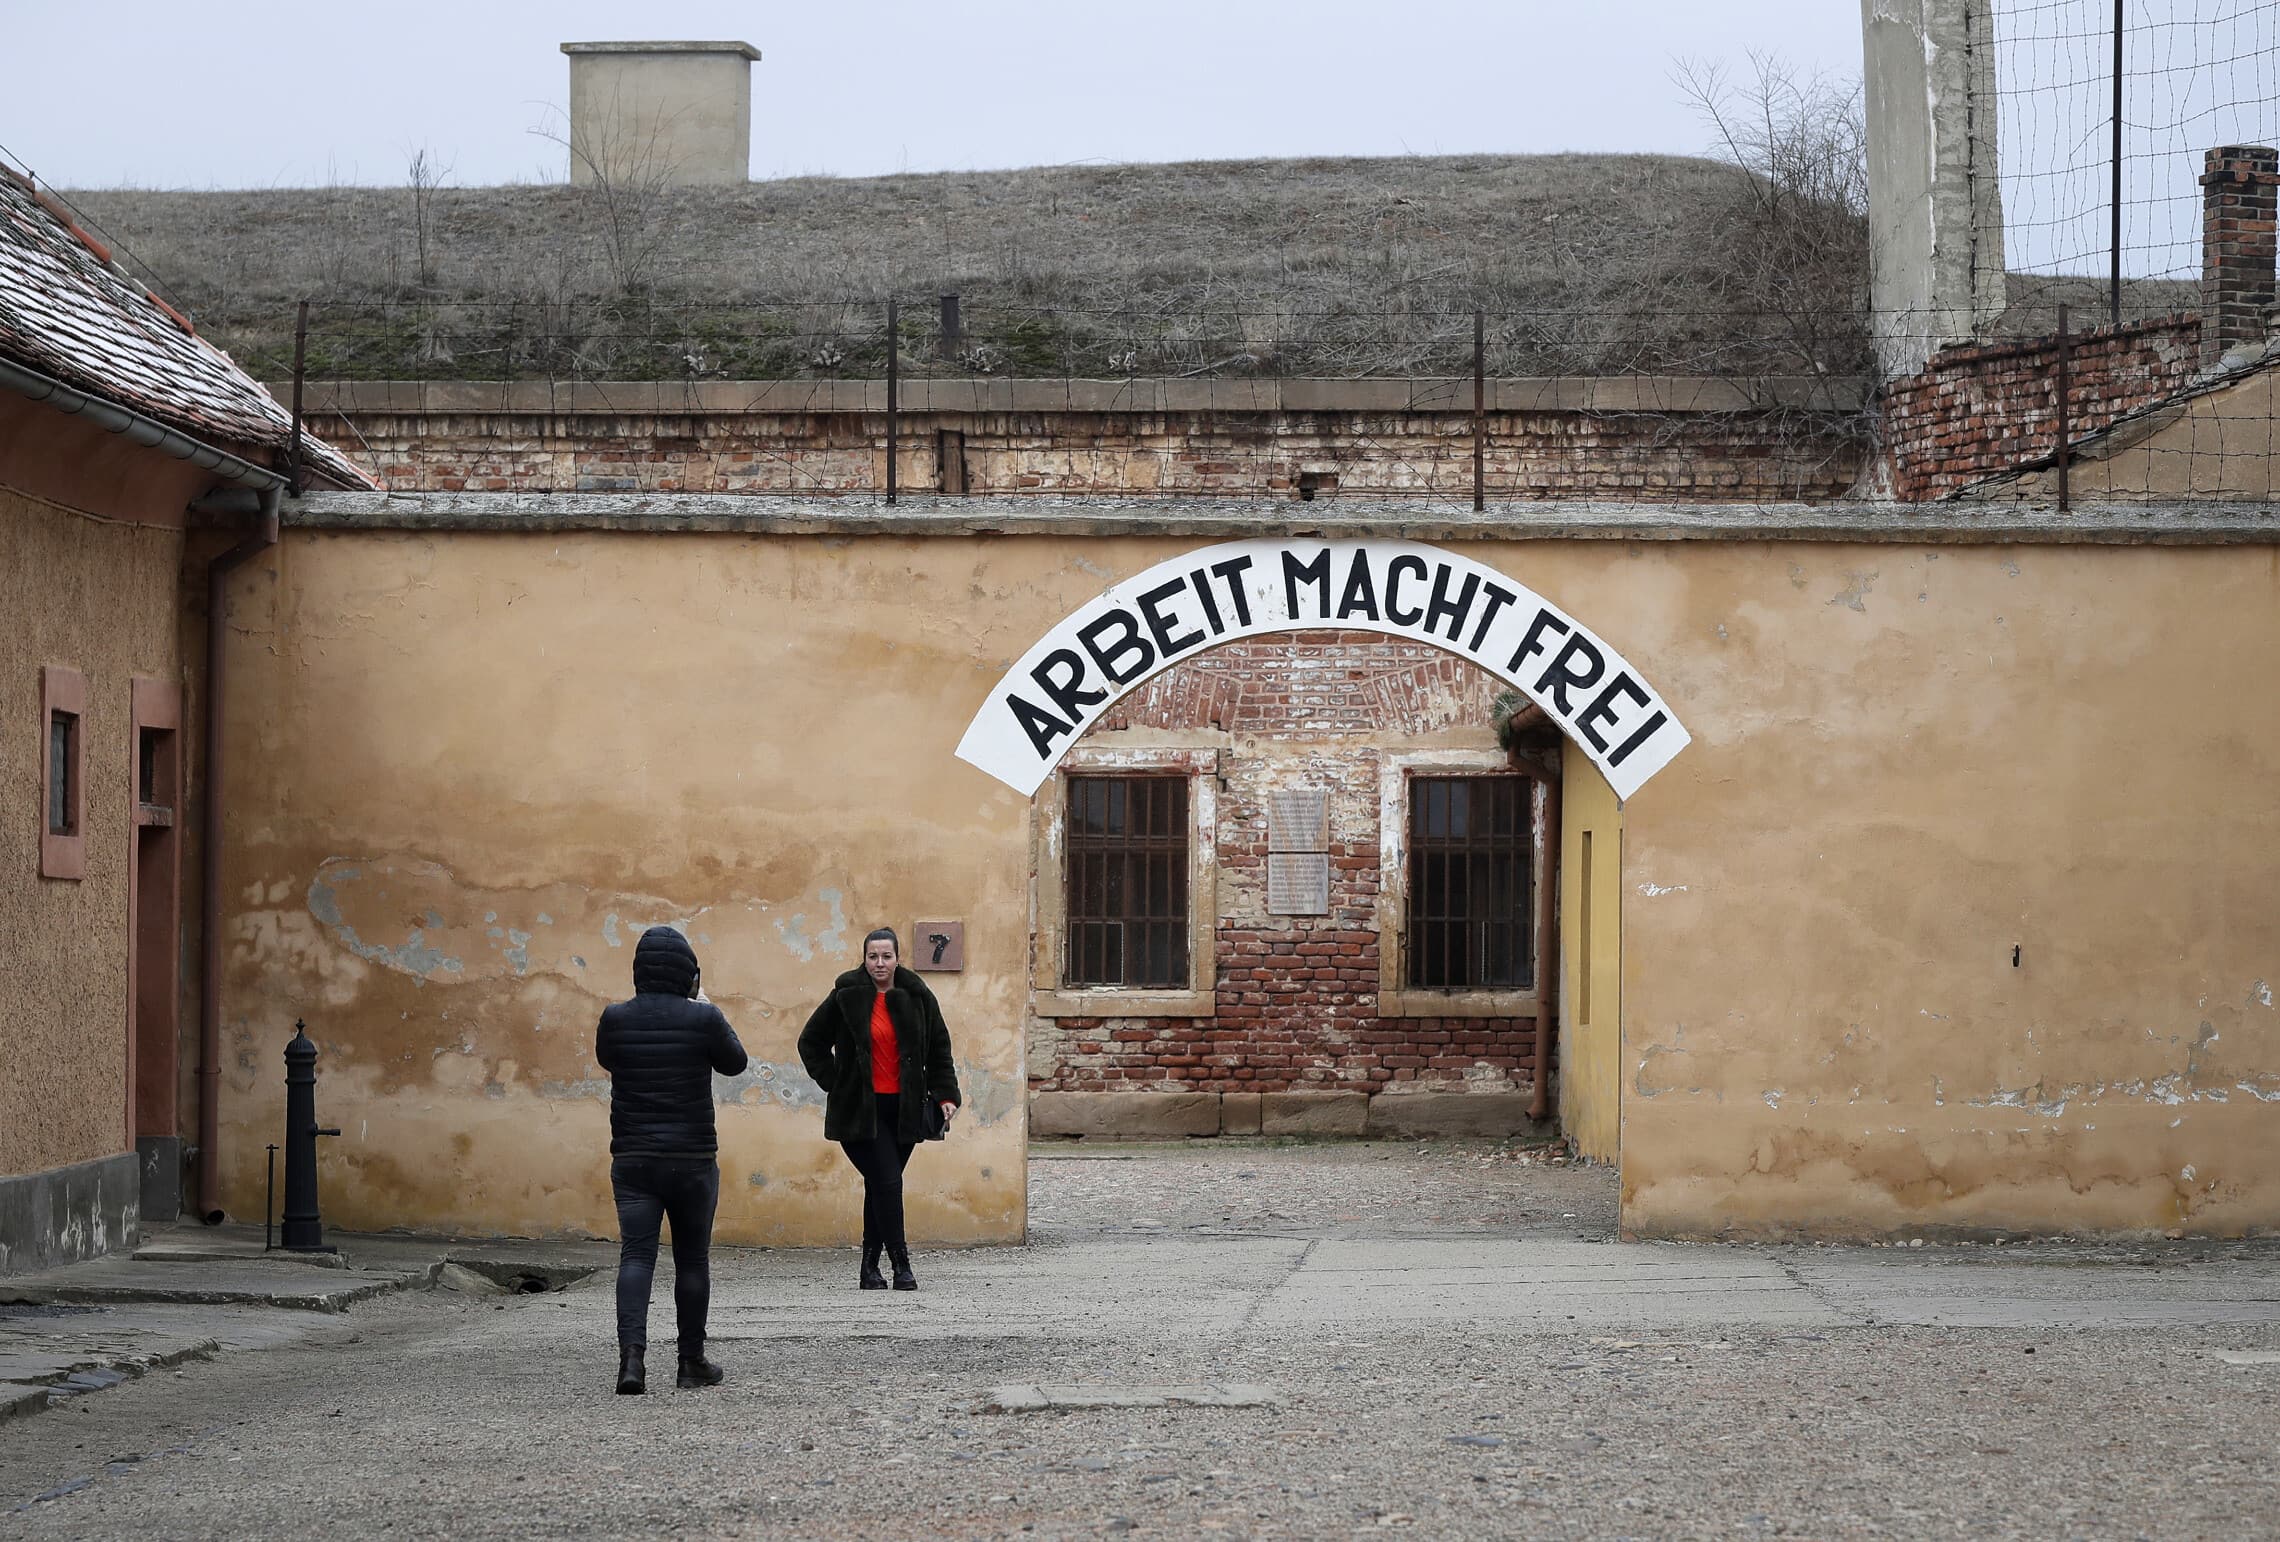 שער הכניסה למחנה טרזין עם הכיתוב &quot;העבודה משחררת&quot;, צ&#039;כיה, 24 בינואר 2019 (צילום: AP Photo/Petr David Josek)